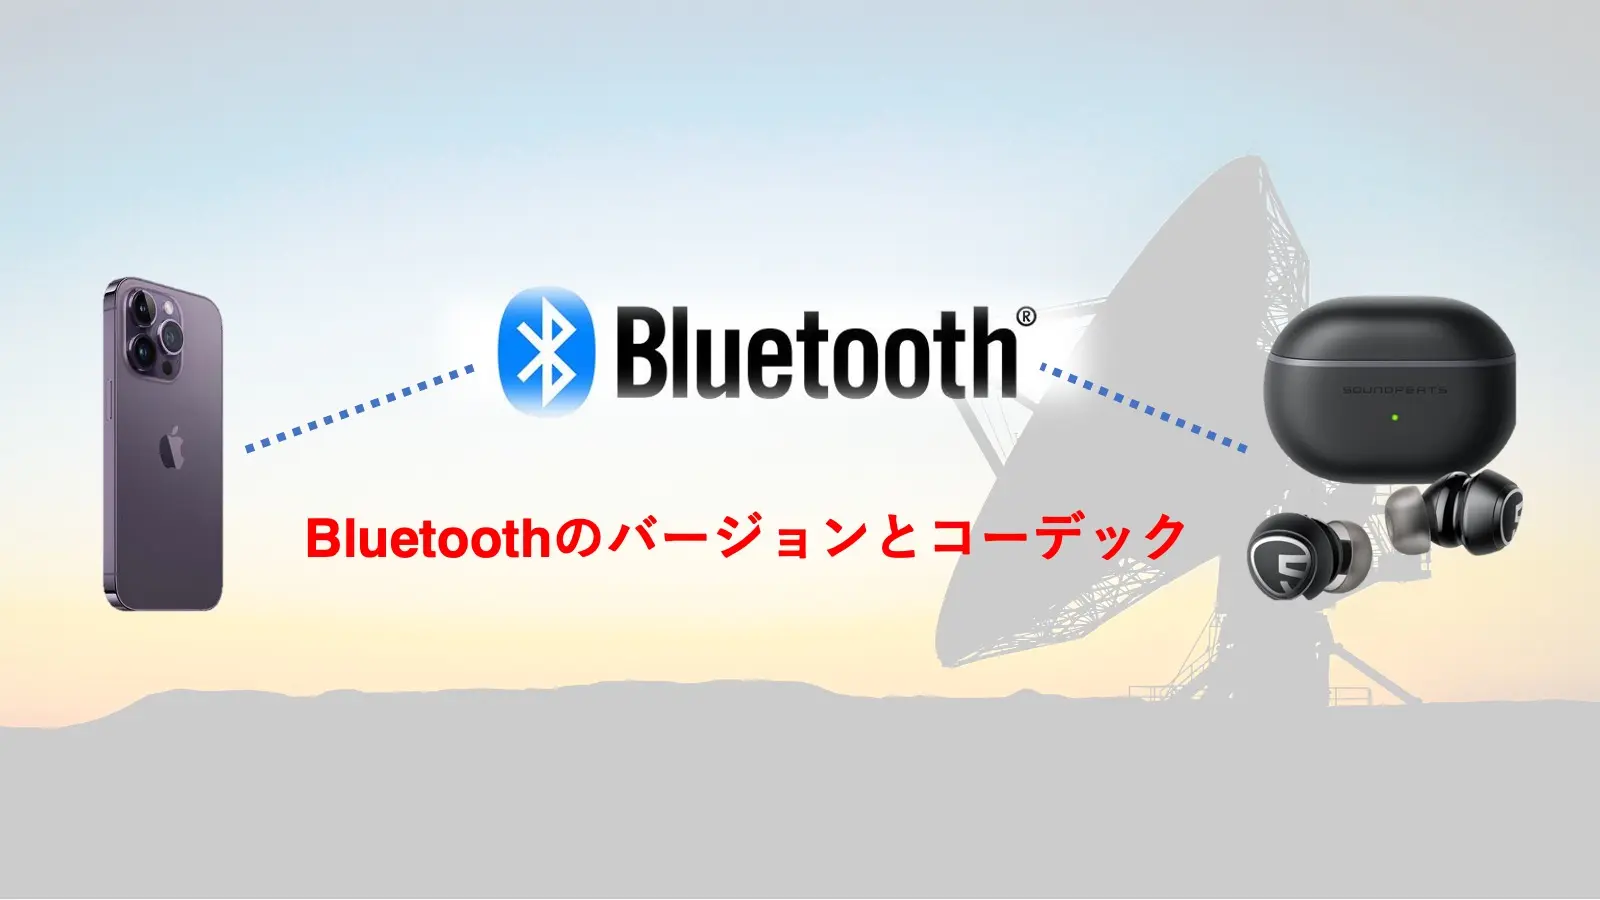 Bluetoothのバージョンとコーデックを解説した記事のアイキャッチャー